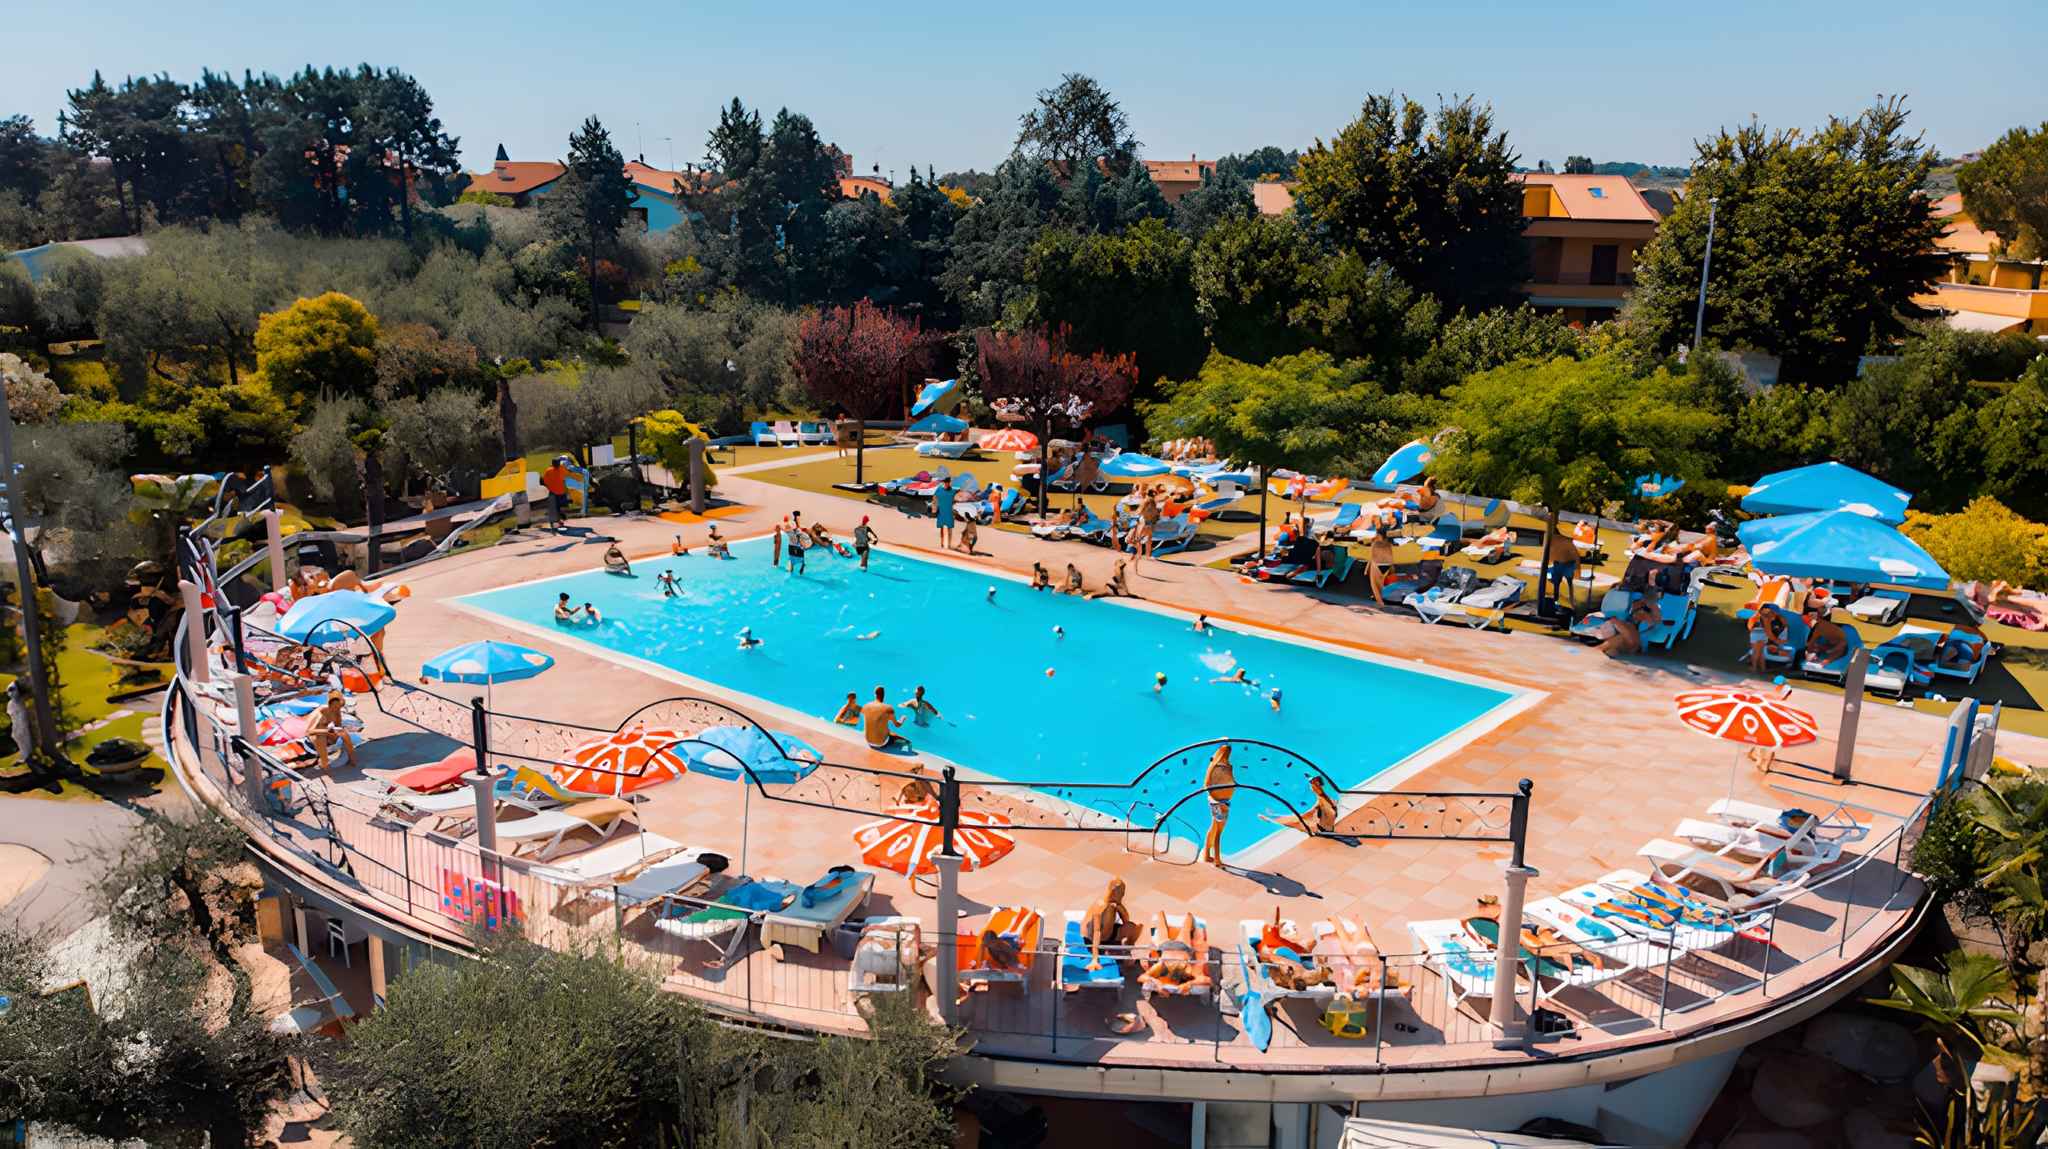 Mobilehome mit Pool in einer Ferienanlage Ferienhaus in Italien